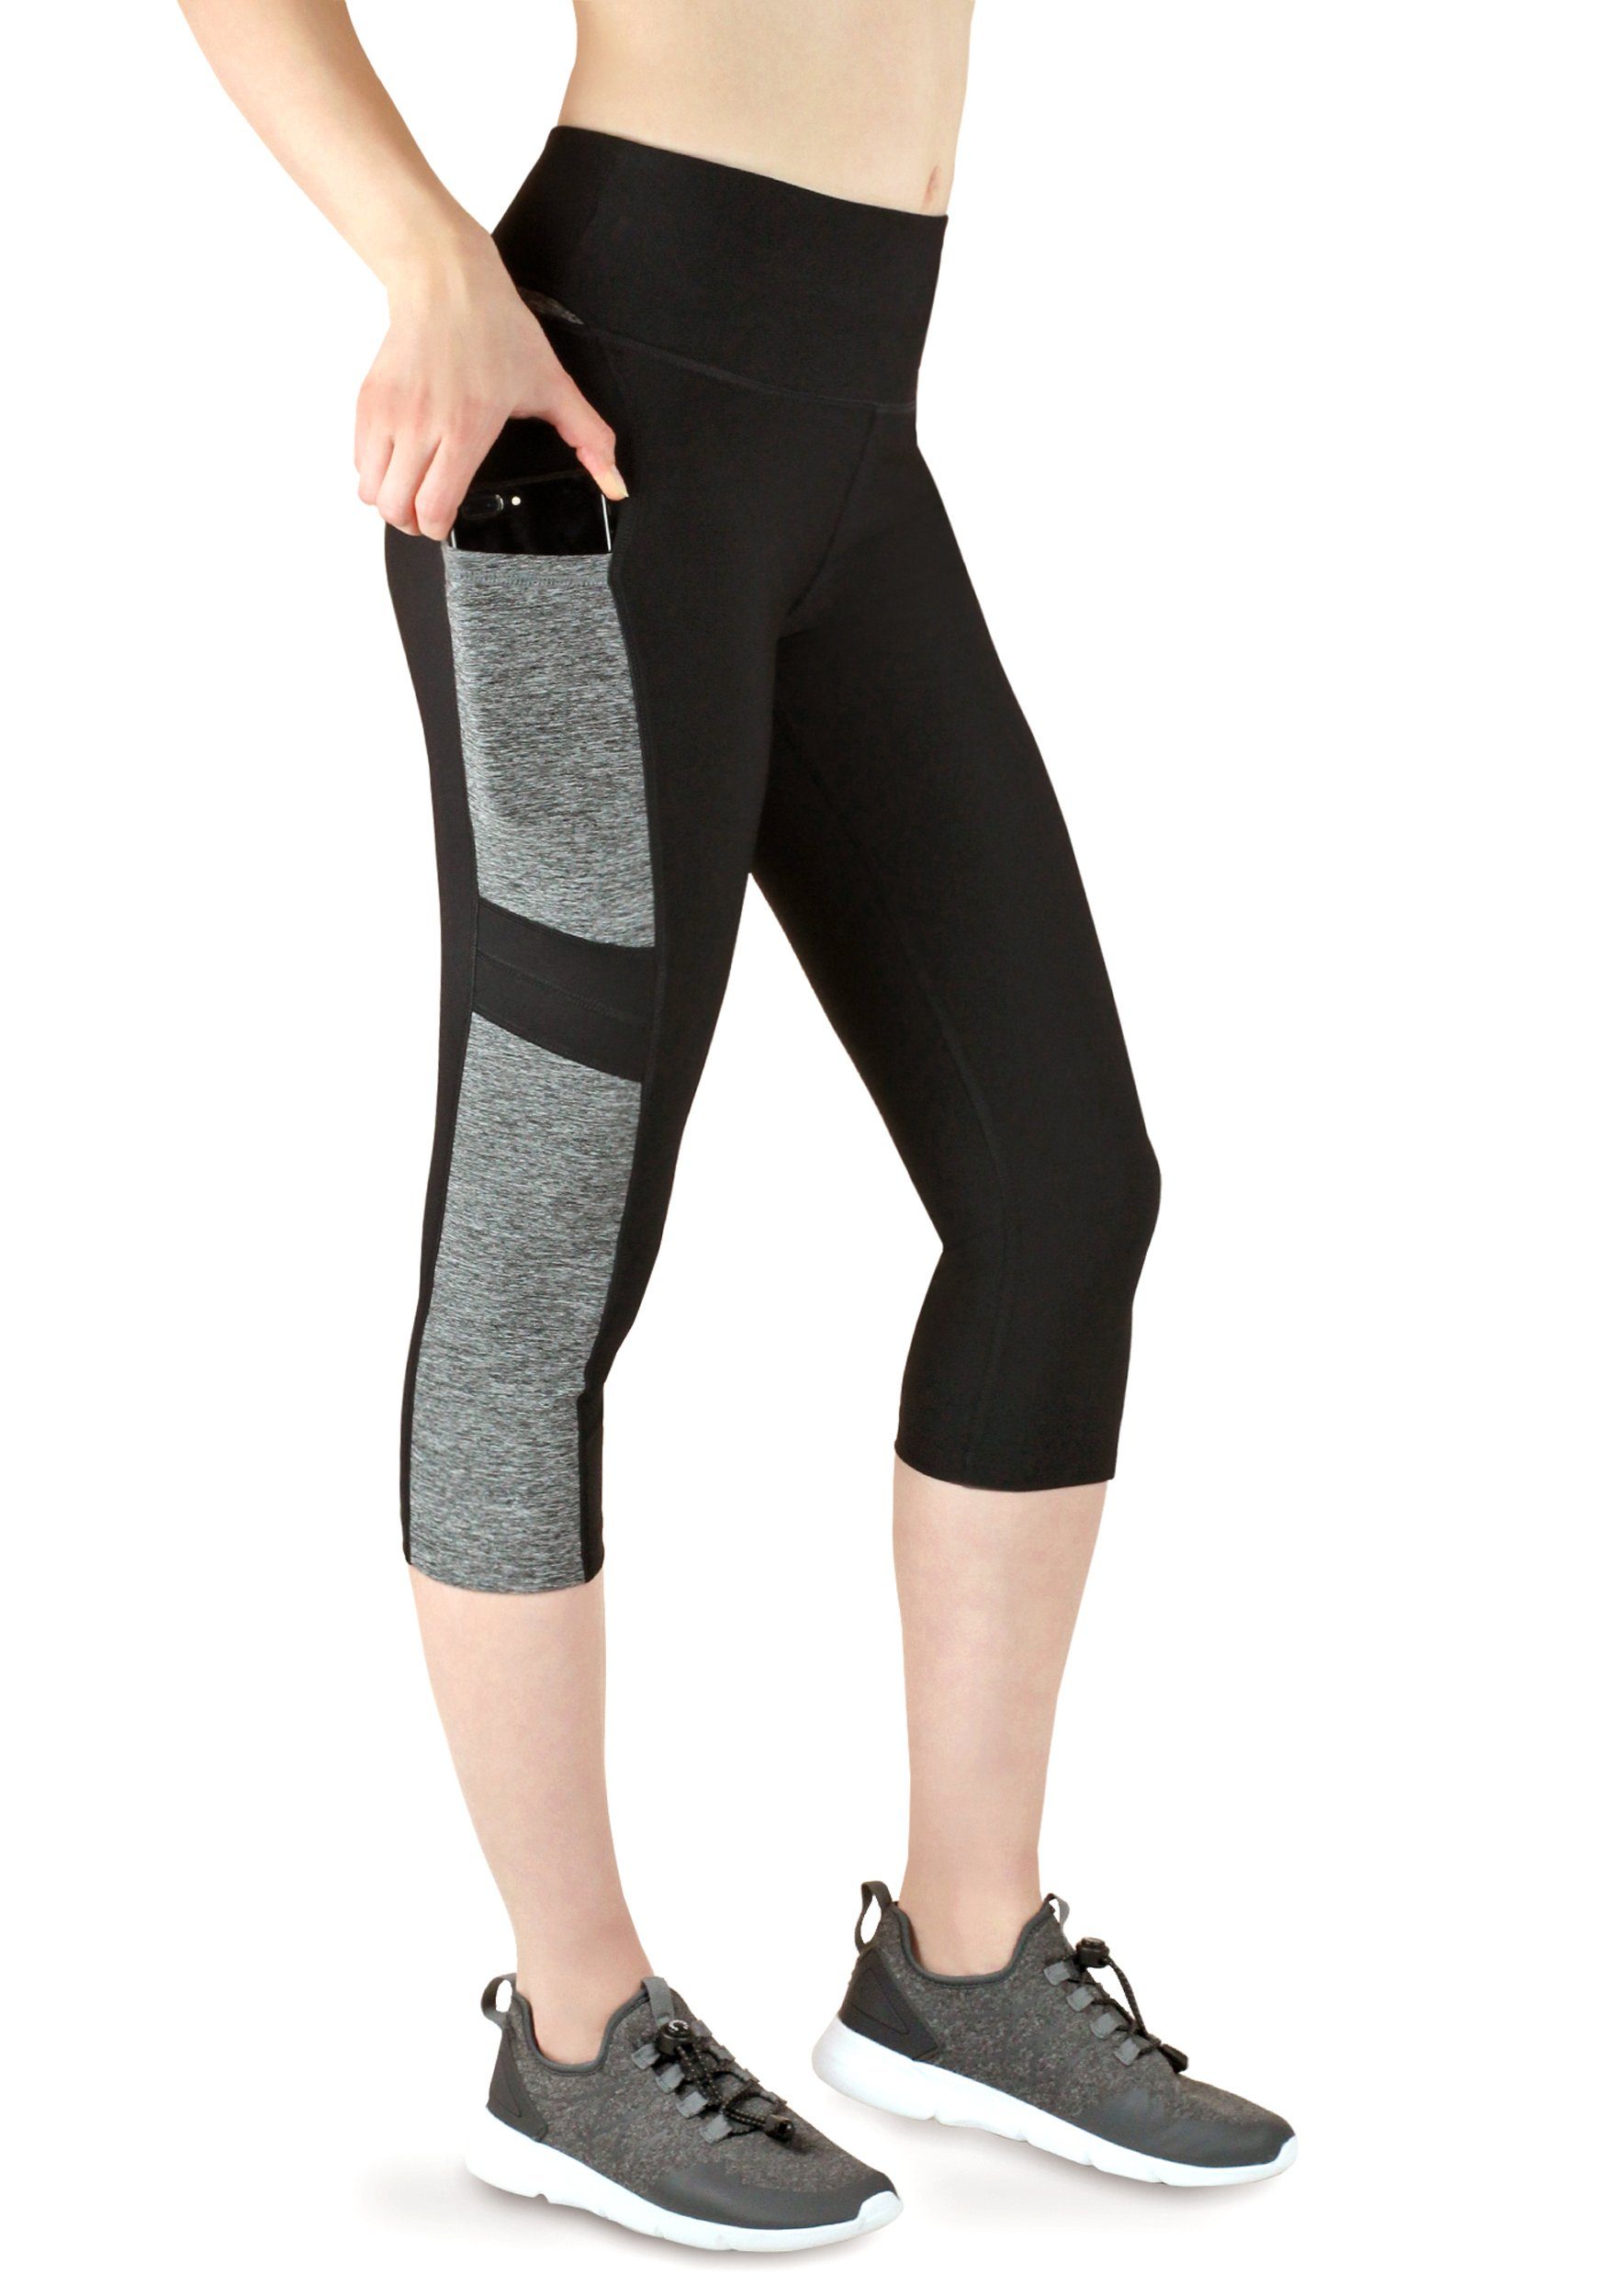 Damen Sporthose Hose 3/4 Legging Stretch Laufhose Fitnesshose Yoga Capris Hose 